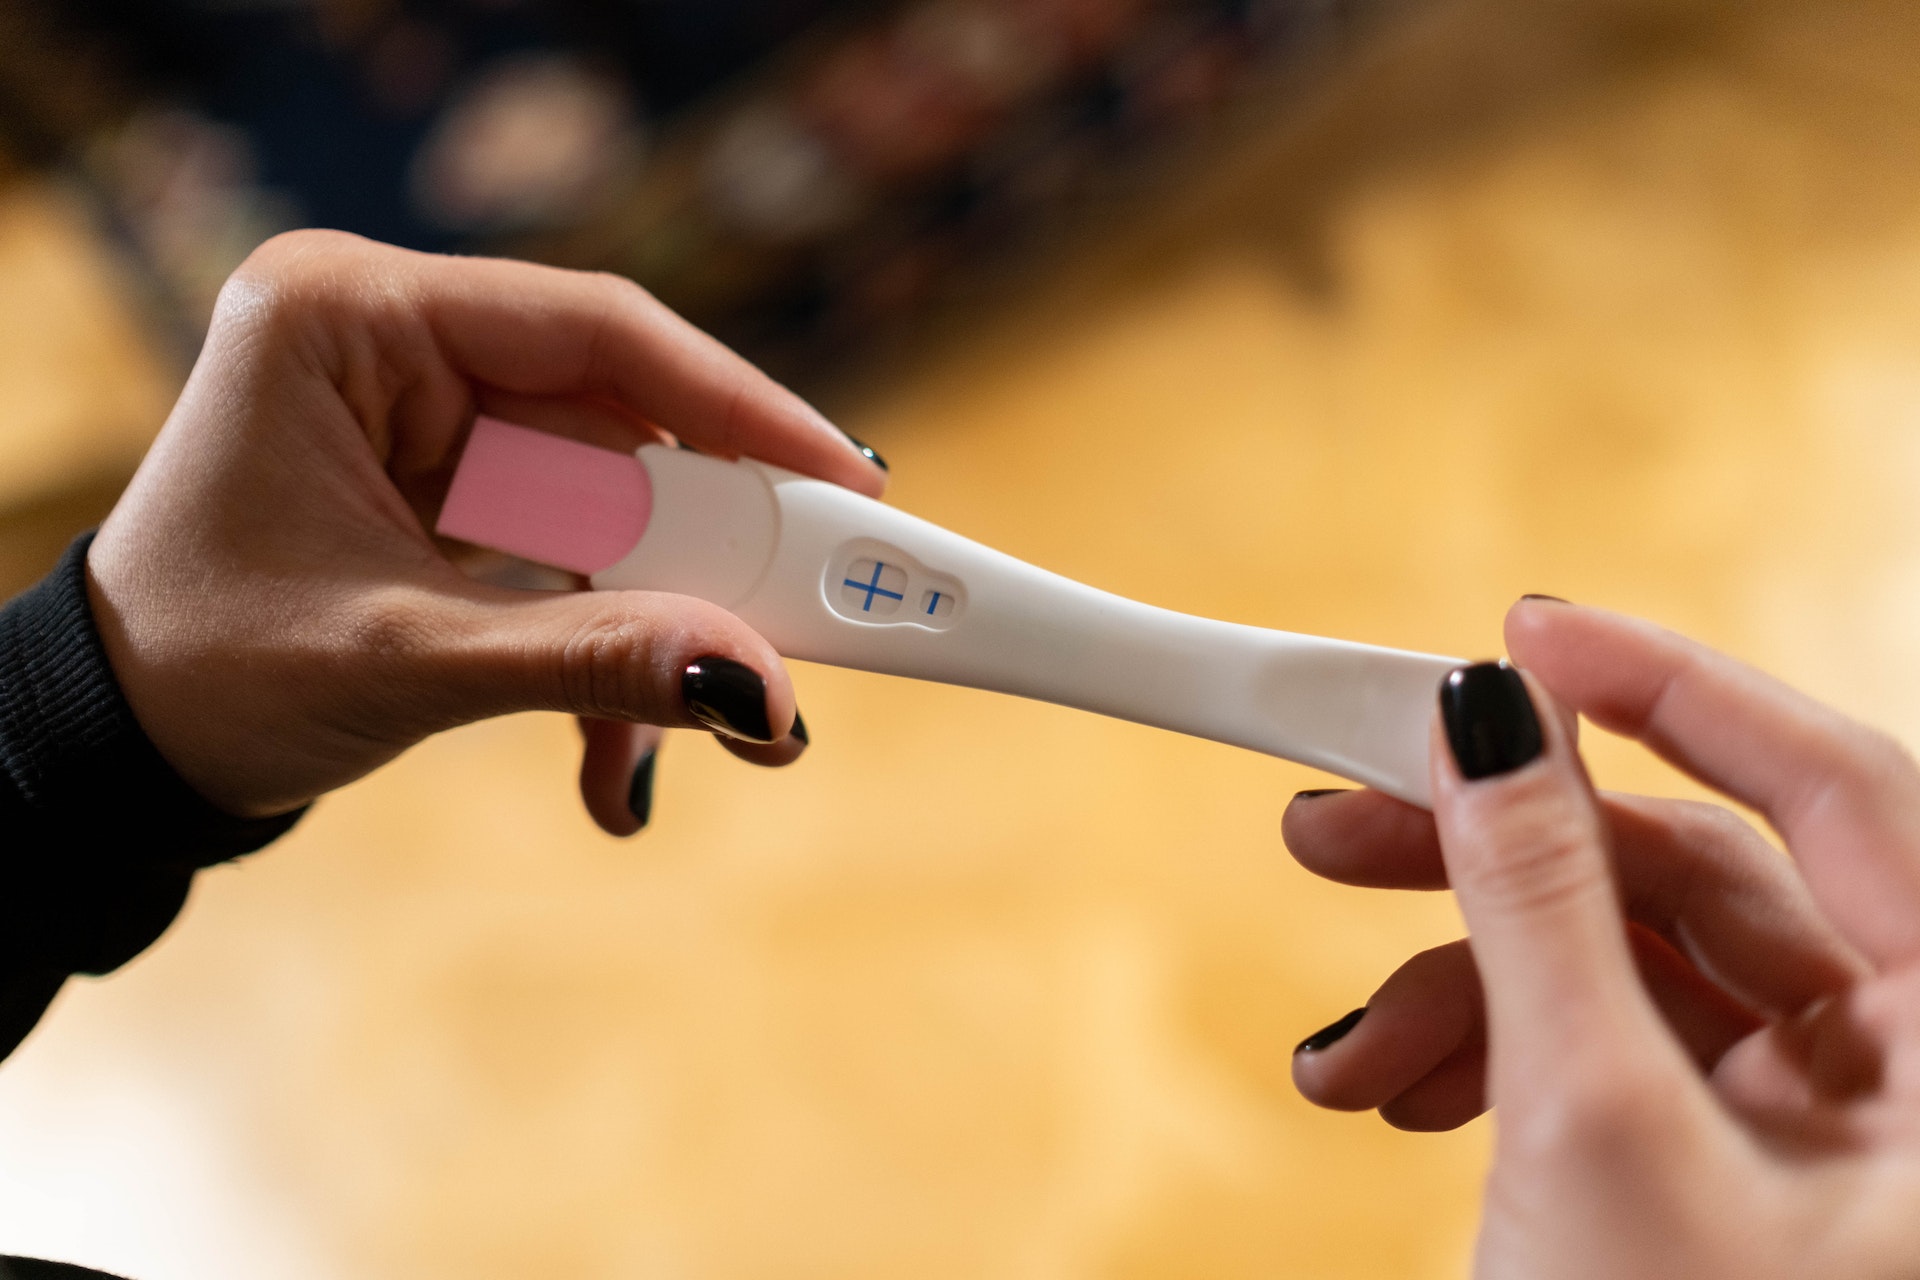 Femme tenant un kit de test de grossesse | Source : Pexels